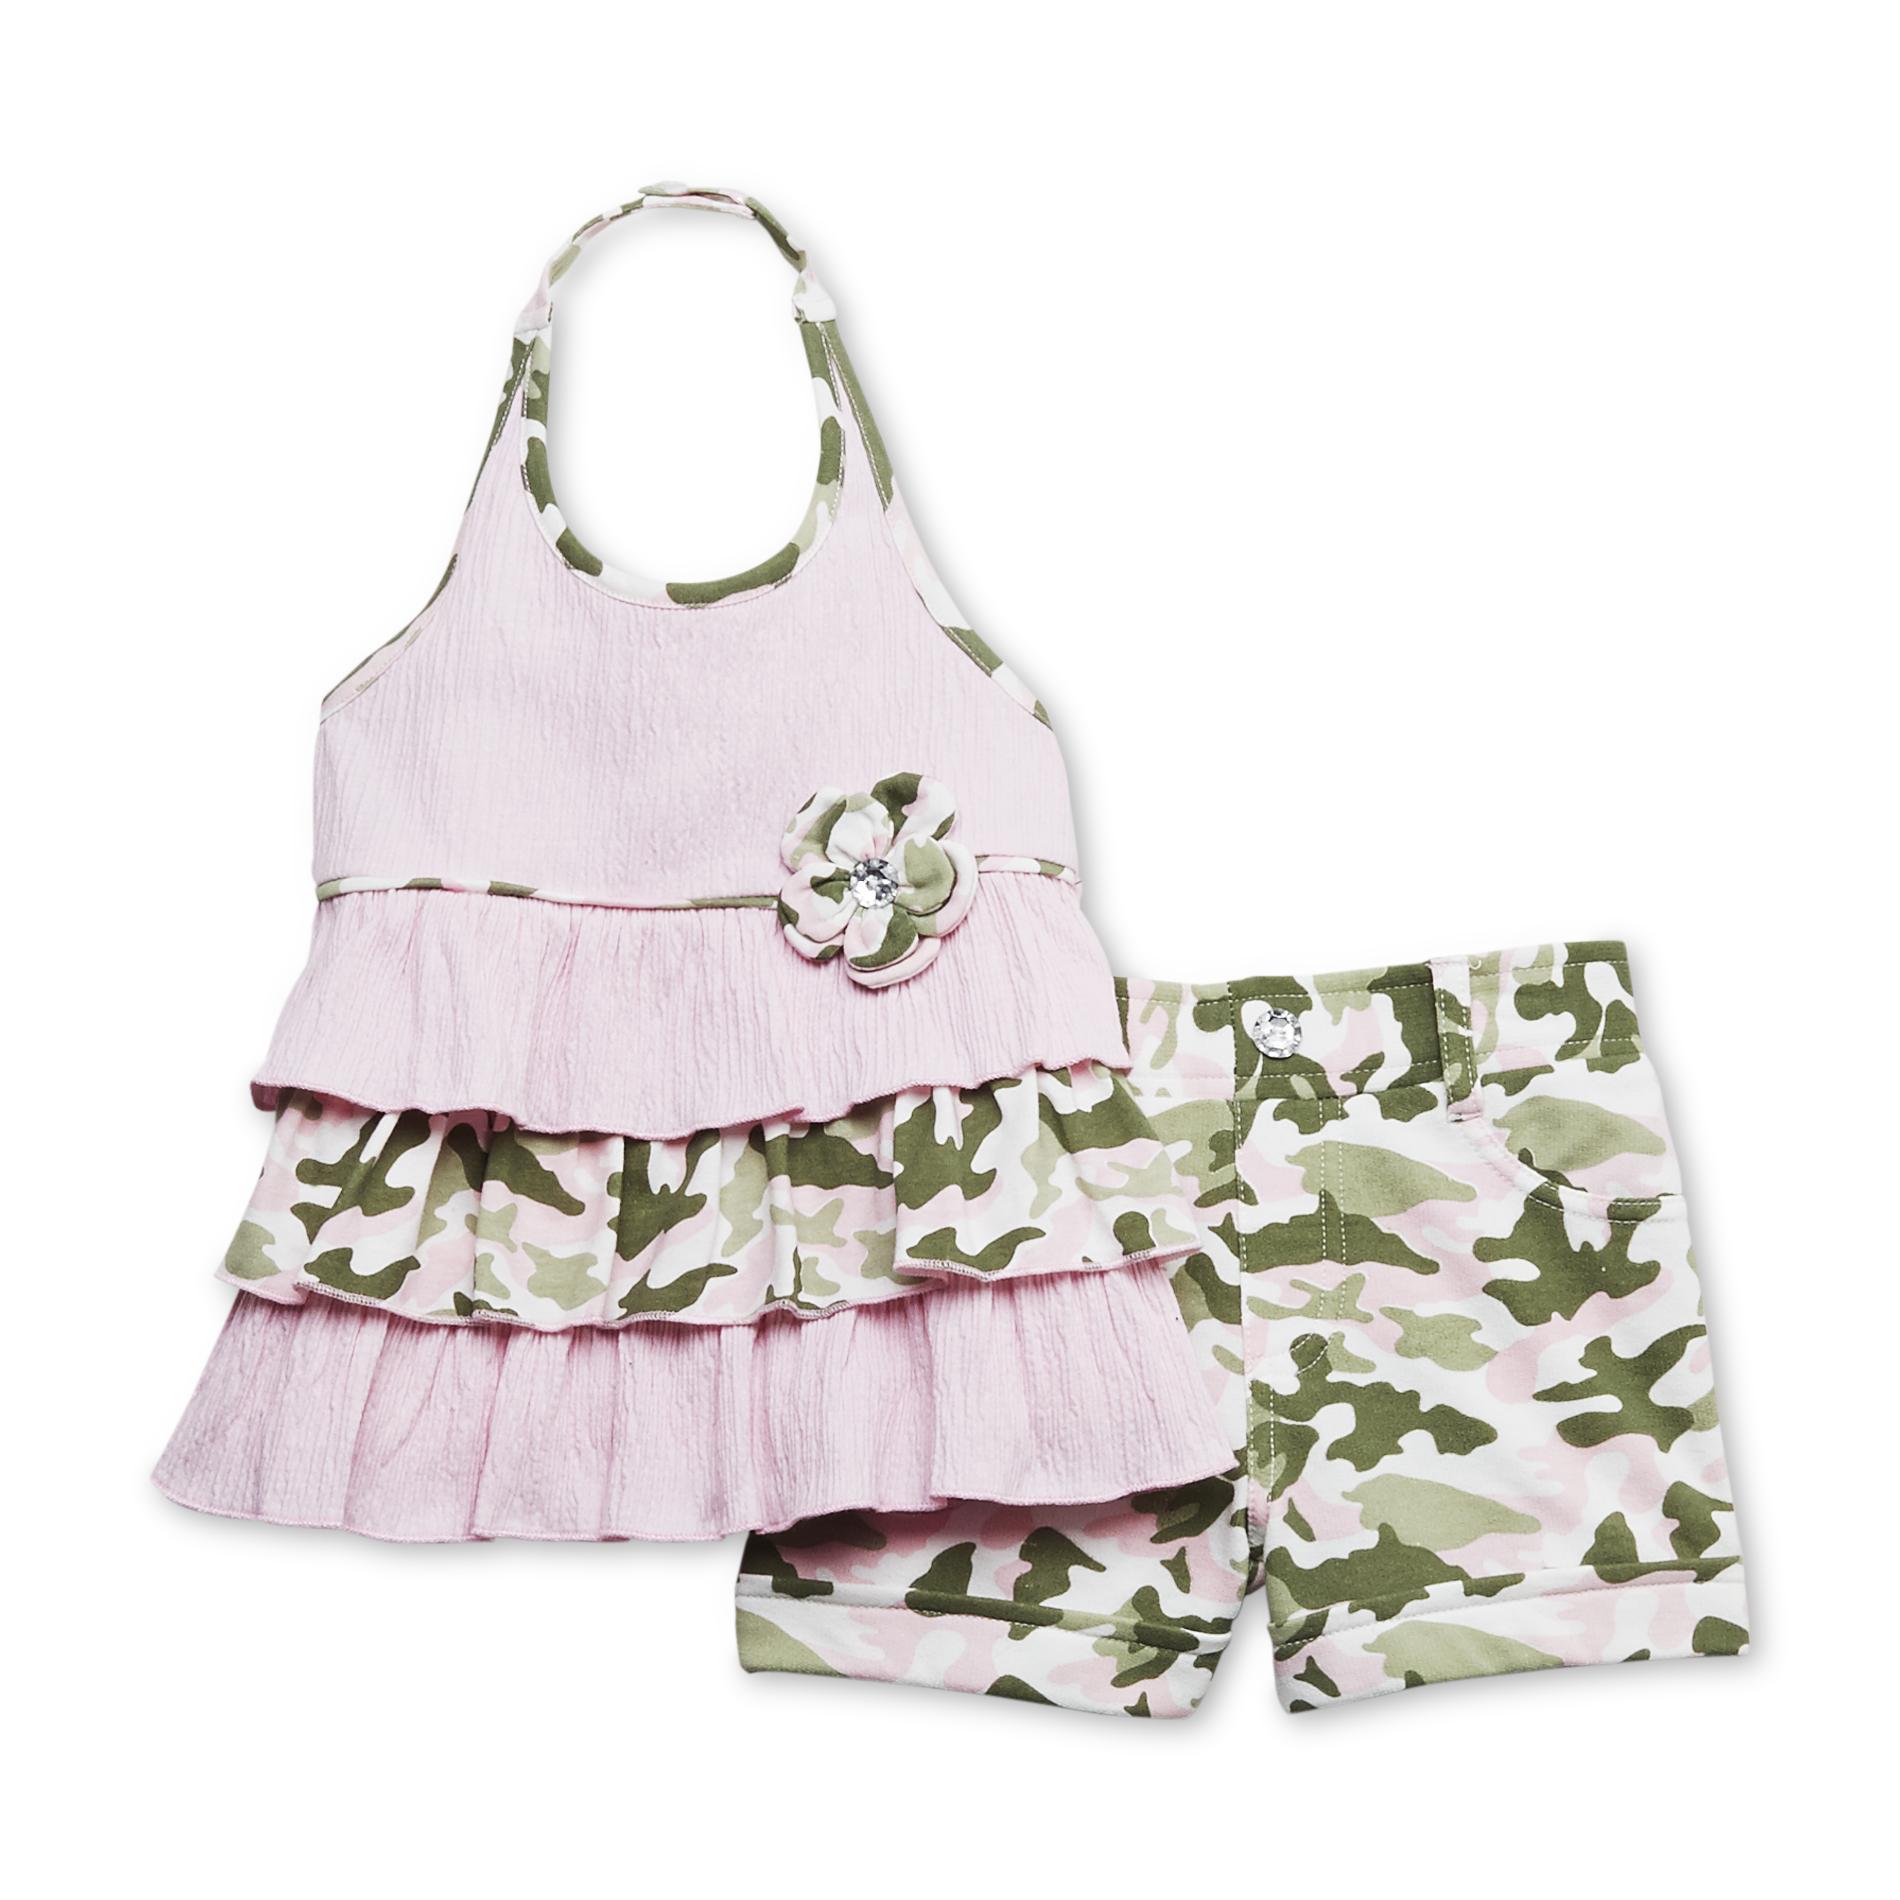 WonderKids Infant & Toddler Girl's Halter Top & Shorts - Camouflage